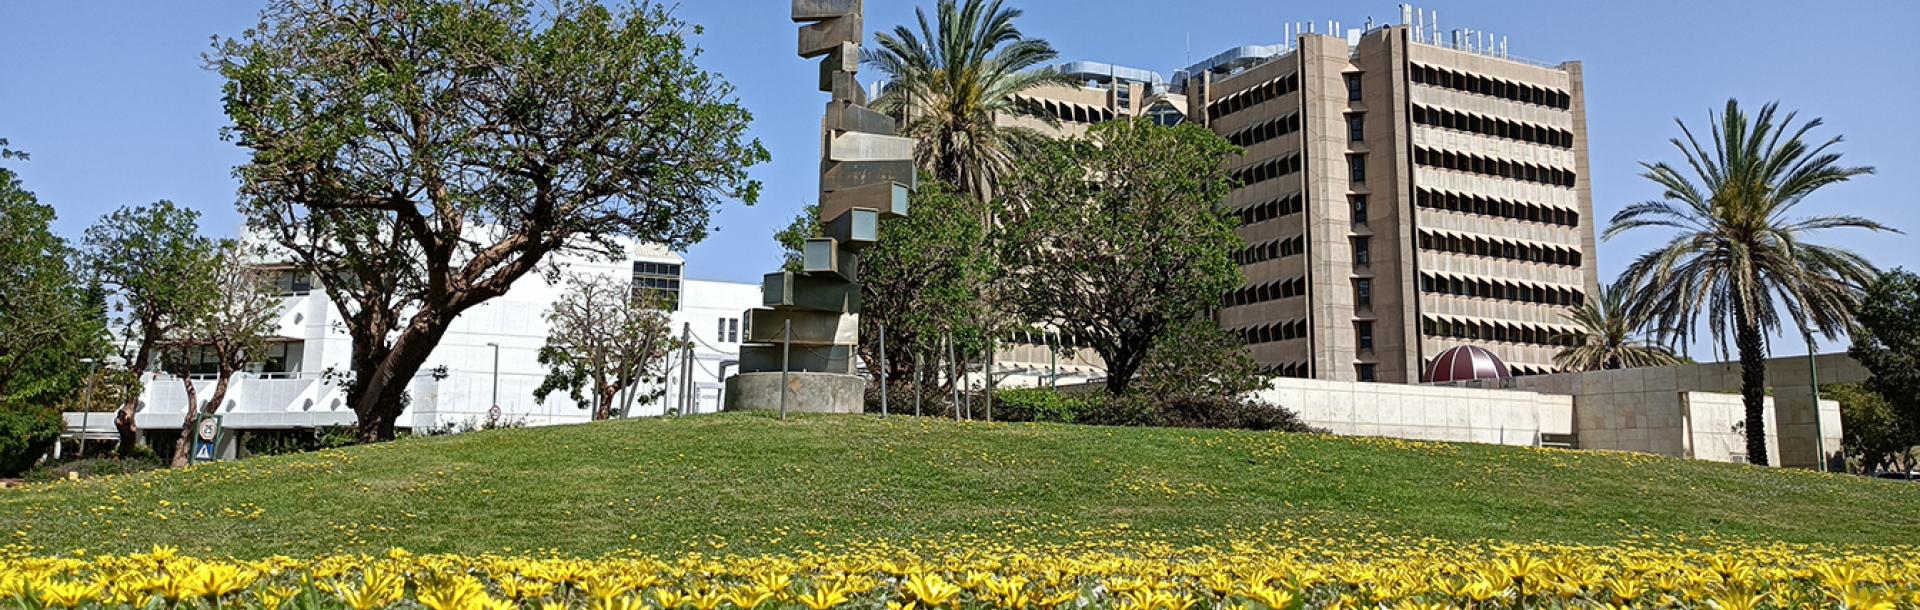 אוניברסיטת תל אביב תעבור ל-100% צריכת חשמל בקמפוס ממקורות אנרגיה ירוקים